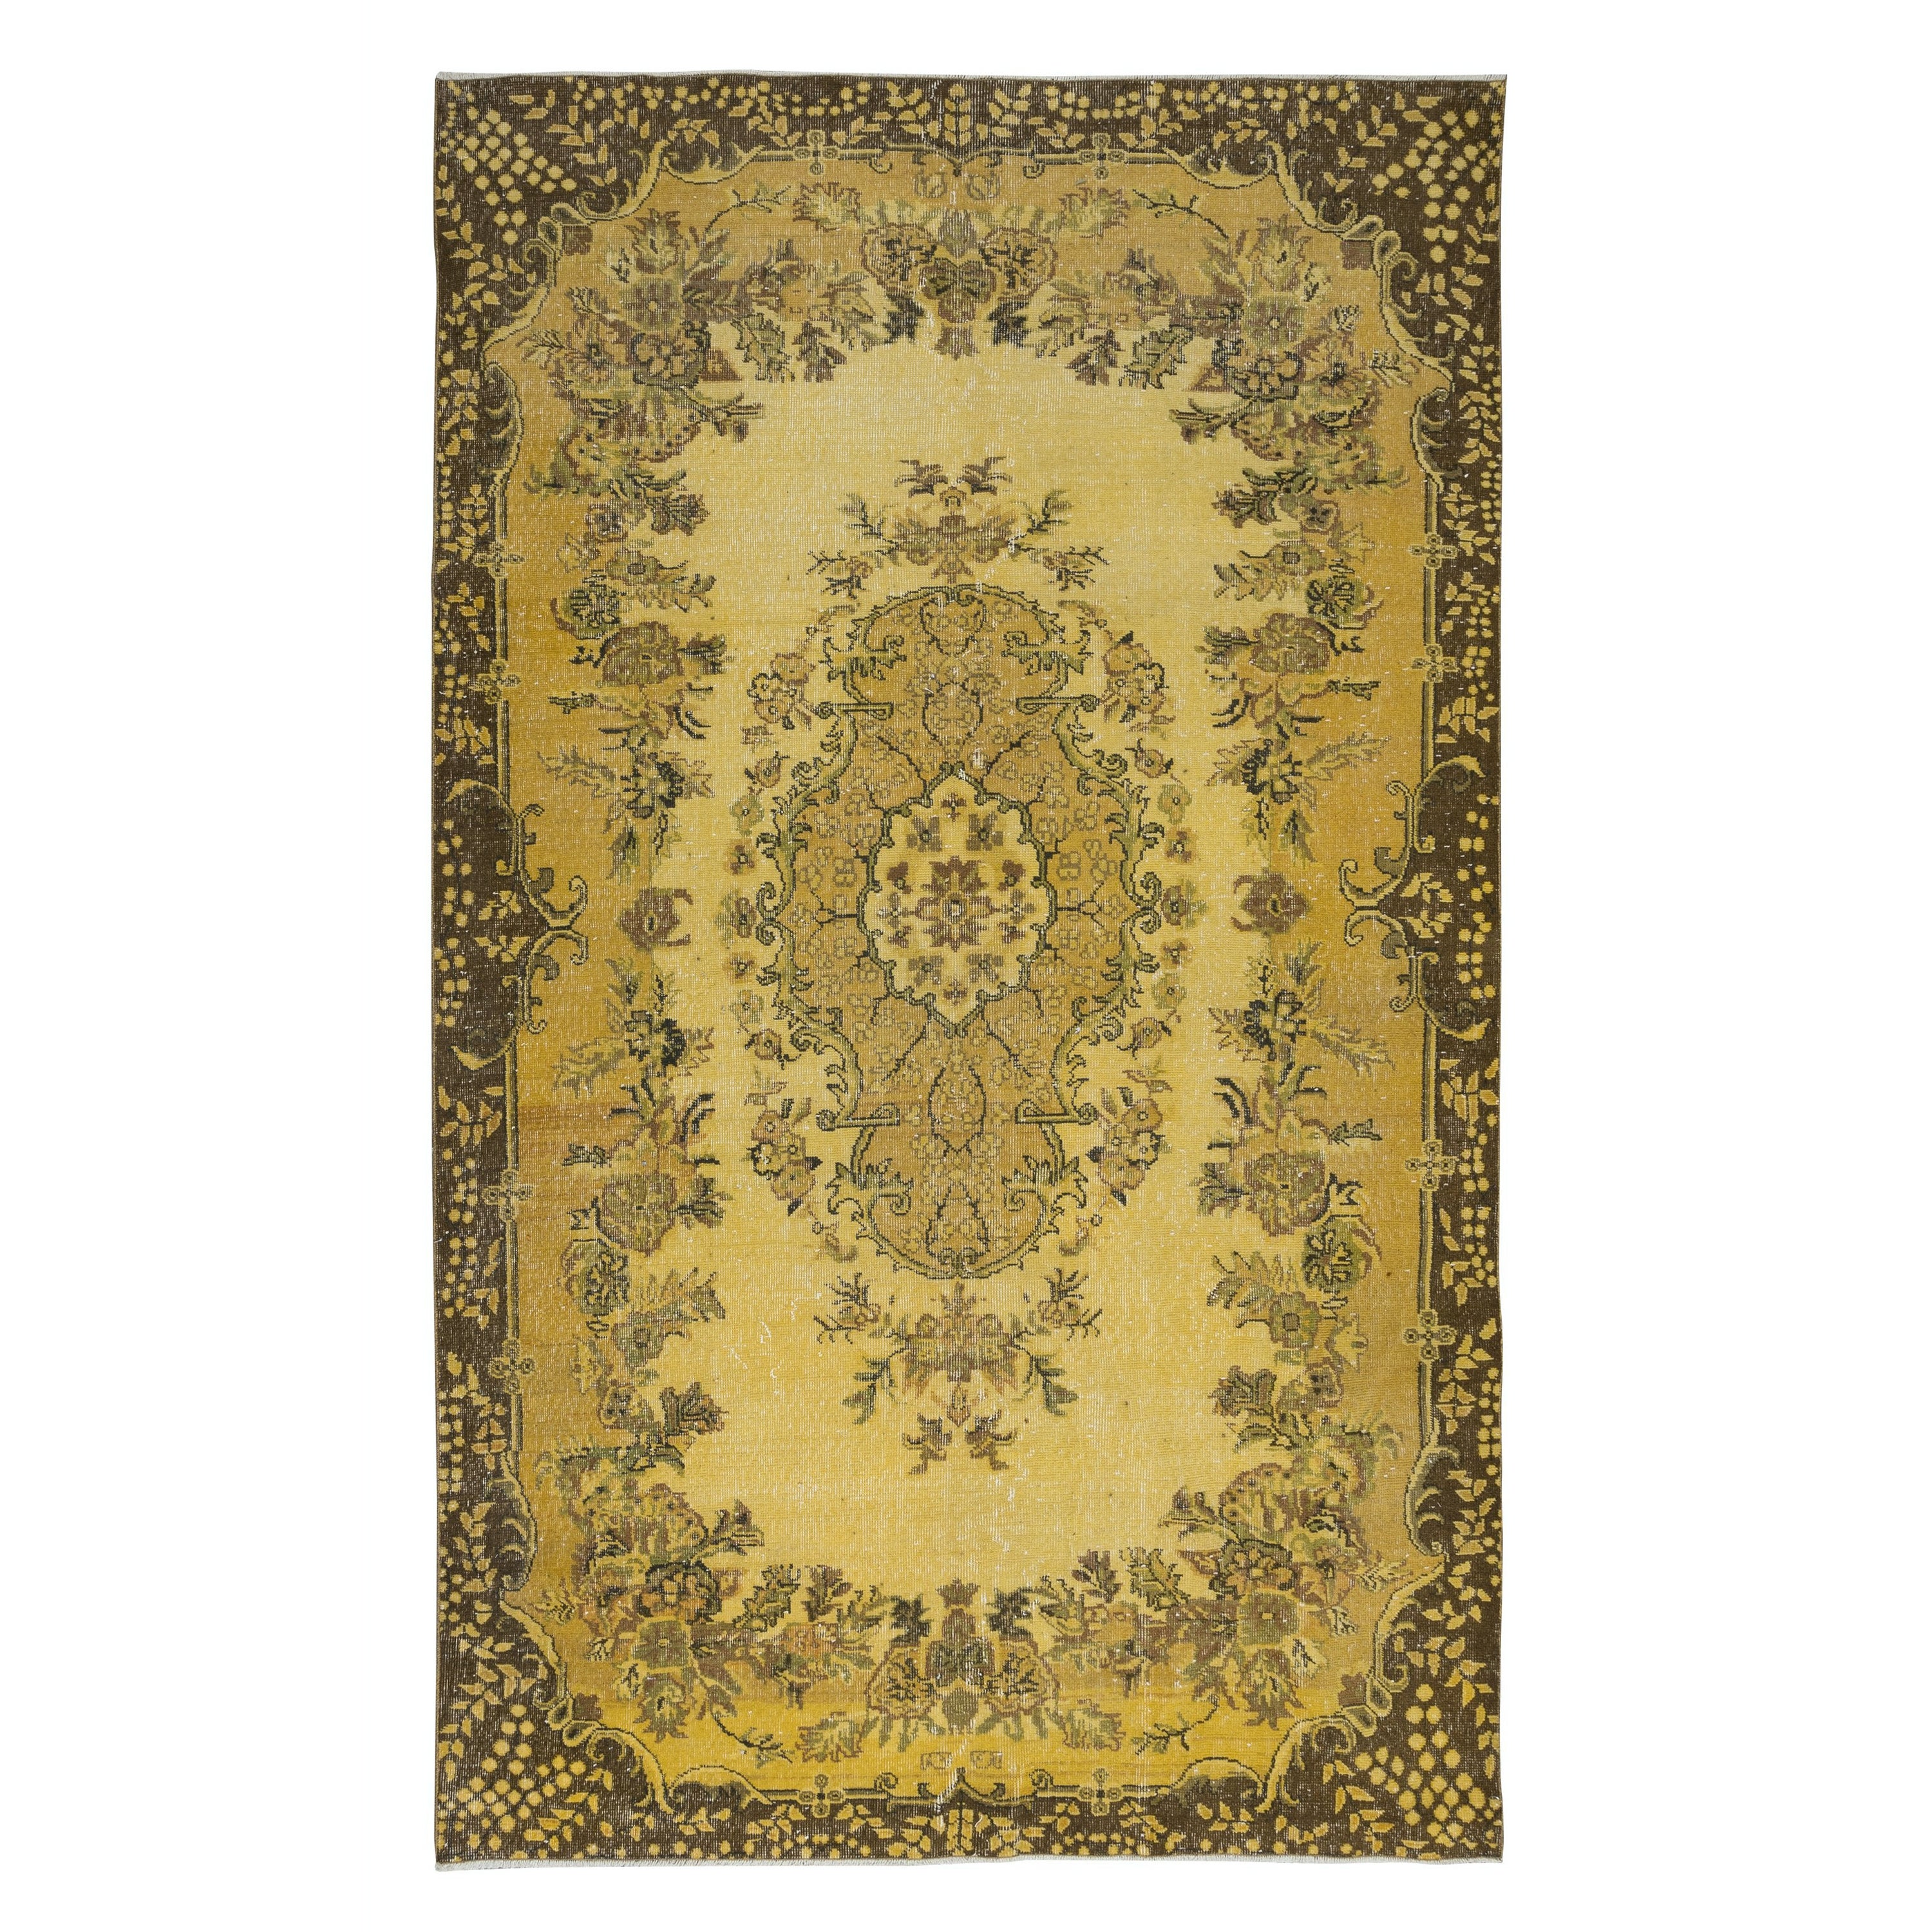 6.6x10.6 Ft Handgefertigter türkischer Teppich mit Medaillon-Design und gelbem Hintergrund